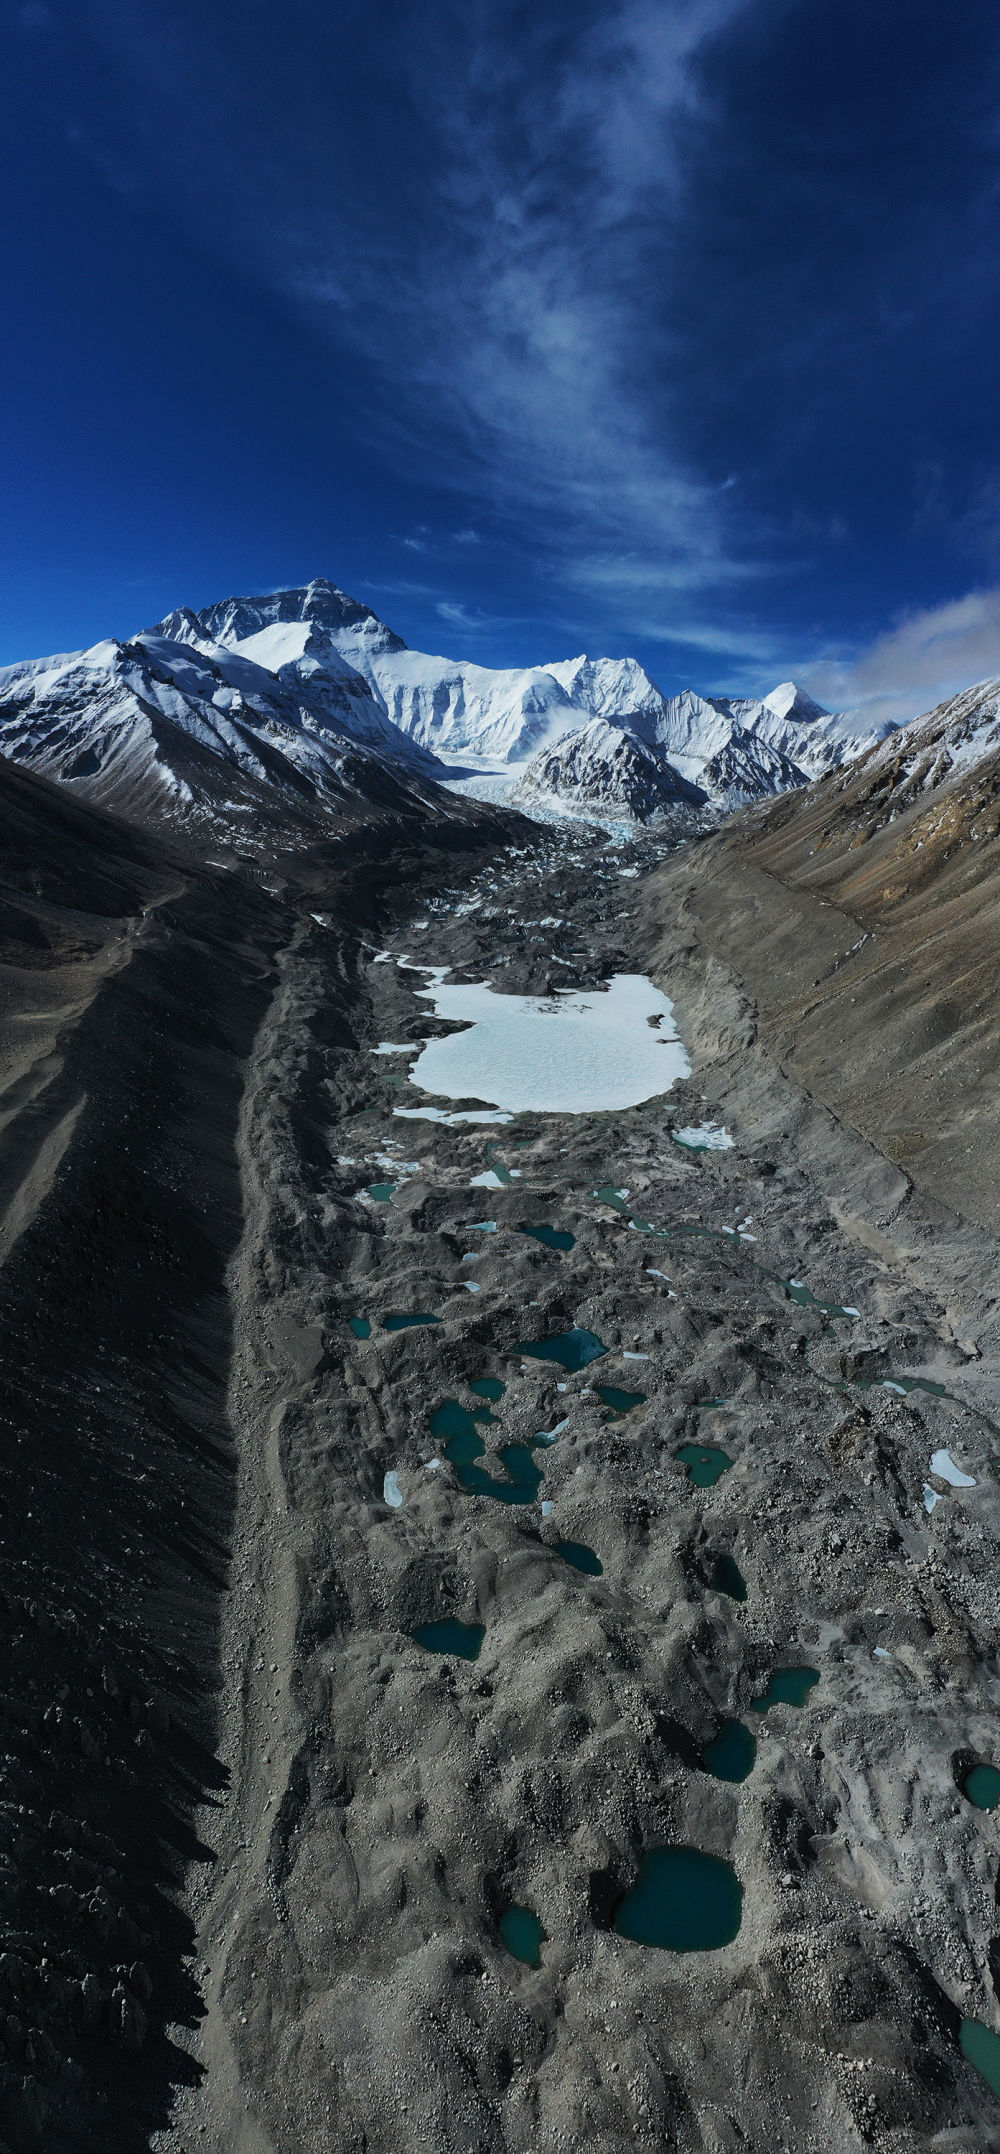 珠峰和中绒布冰川上空,一片苍茫